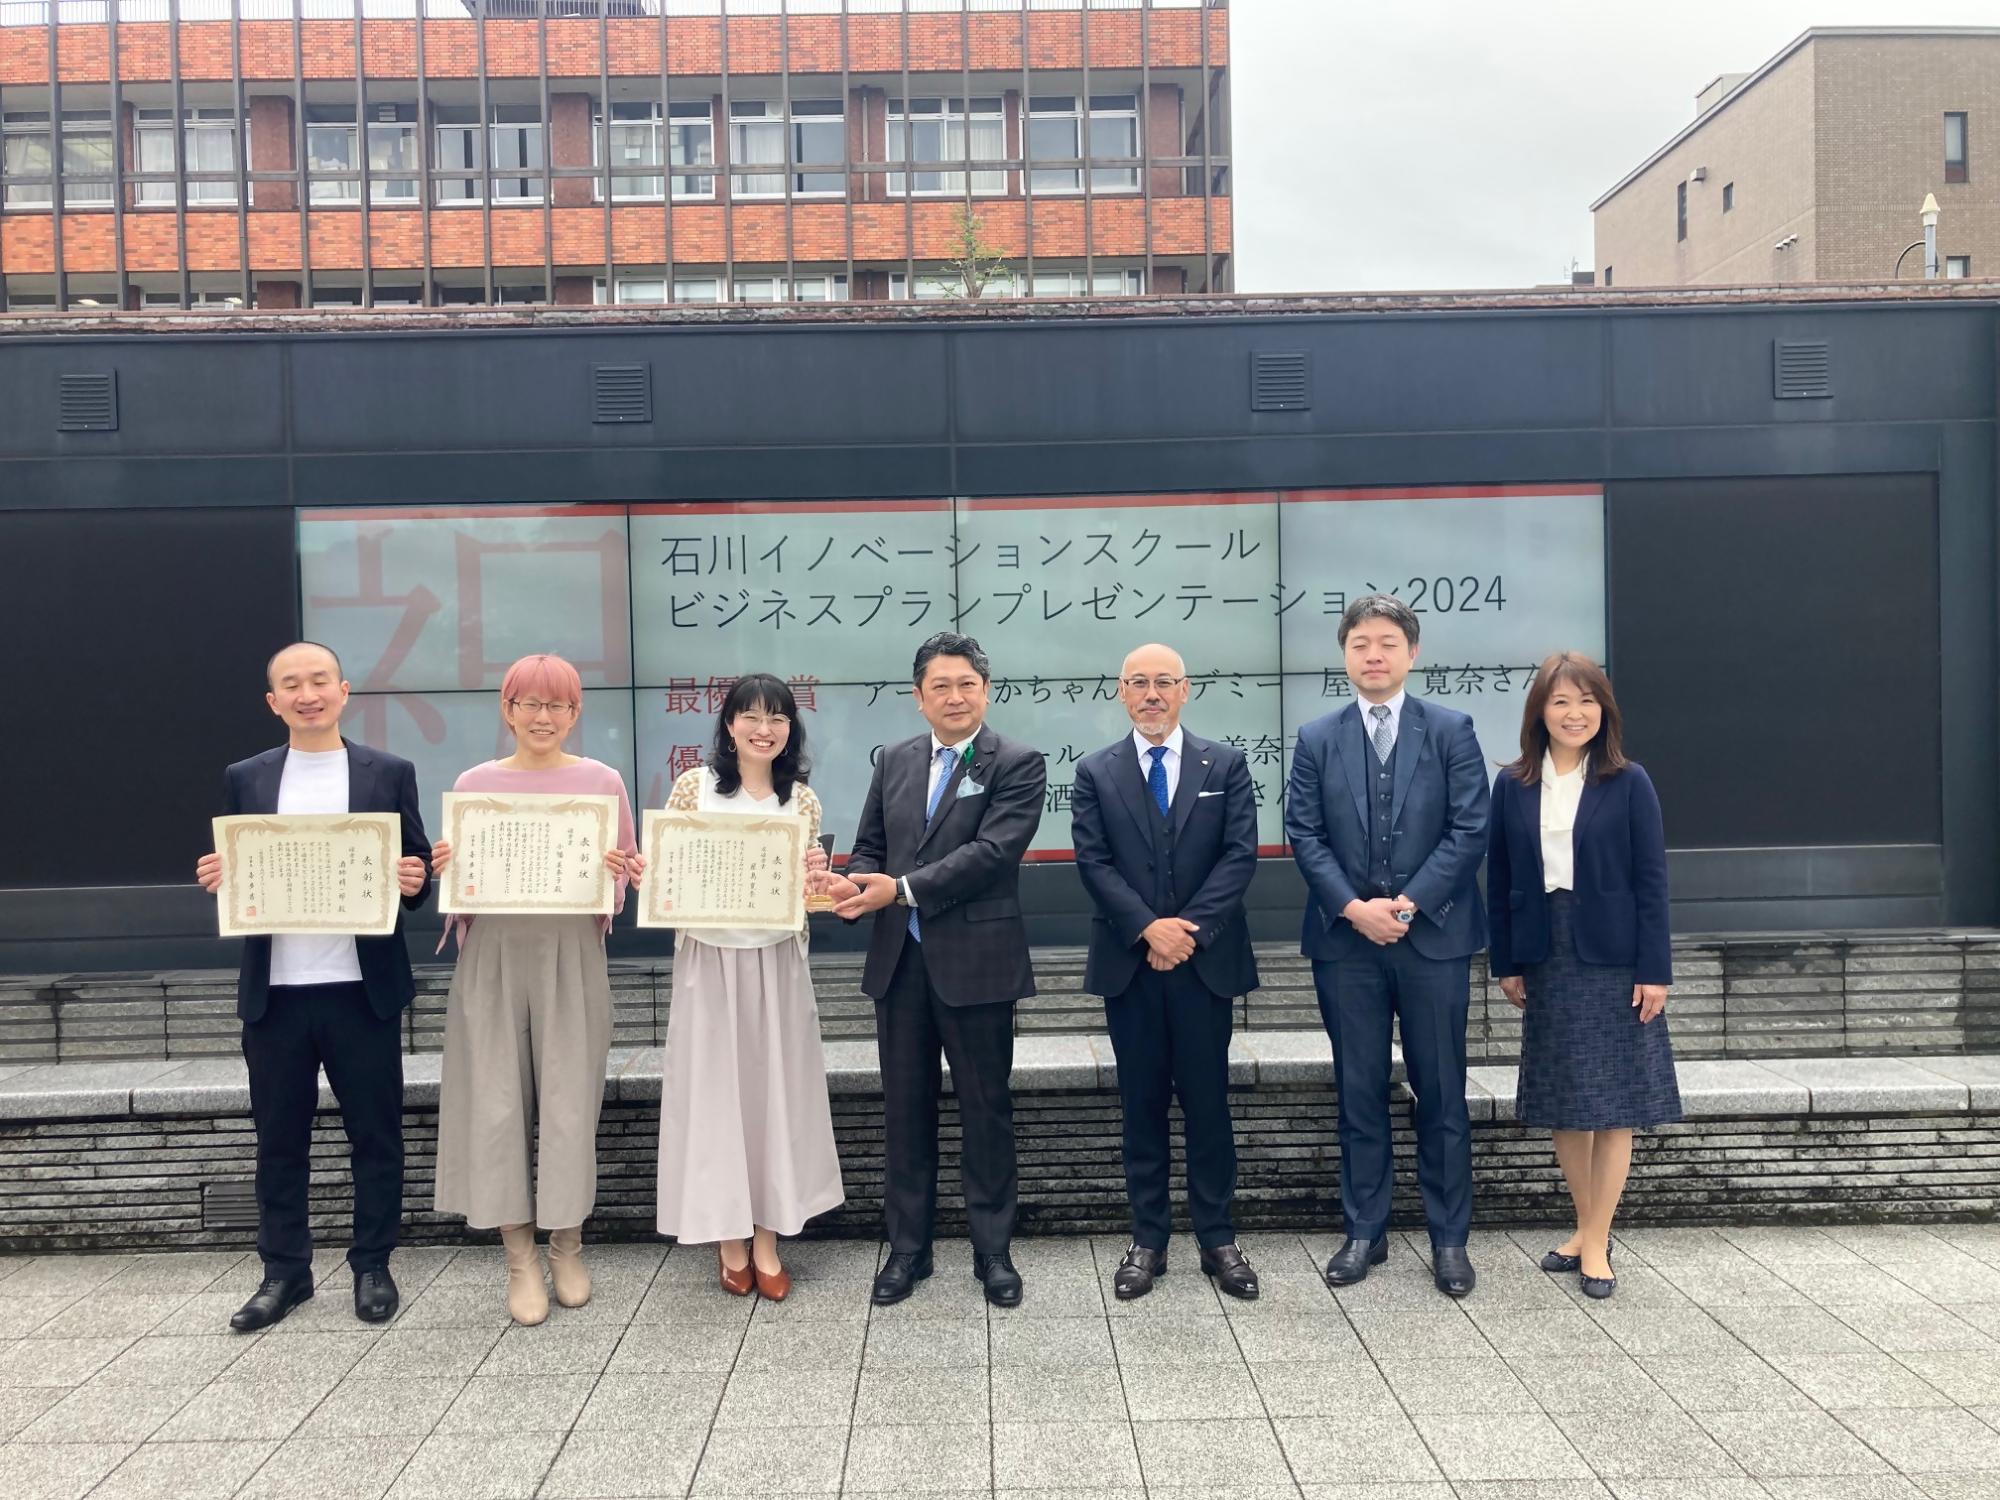 石川イノベーションスクール ビジネスプランプレゼンテーションの入賞者と記念撮影の様子